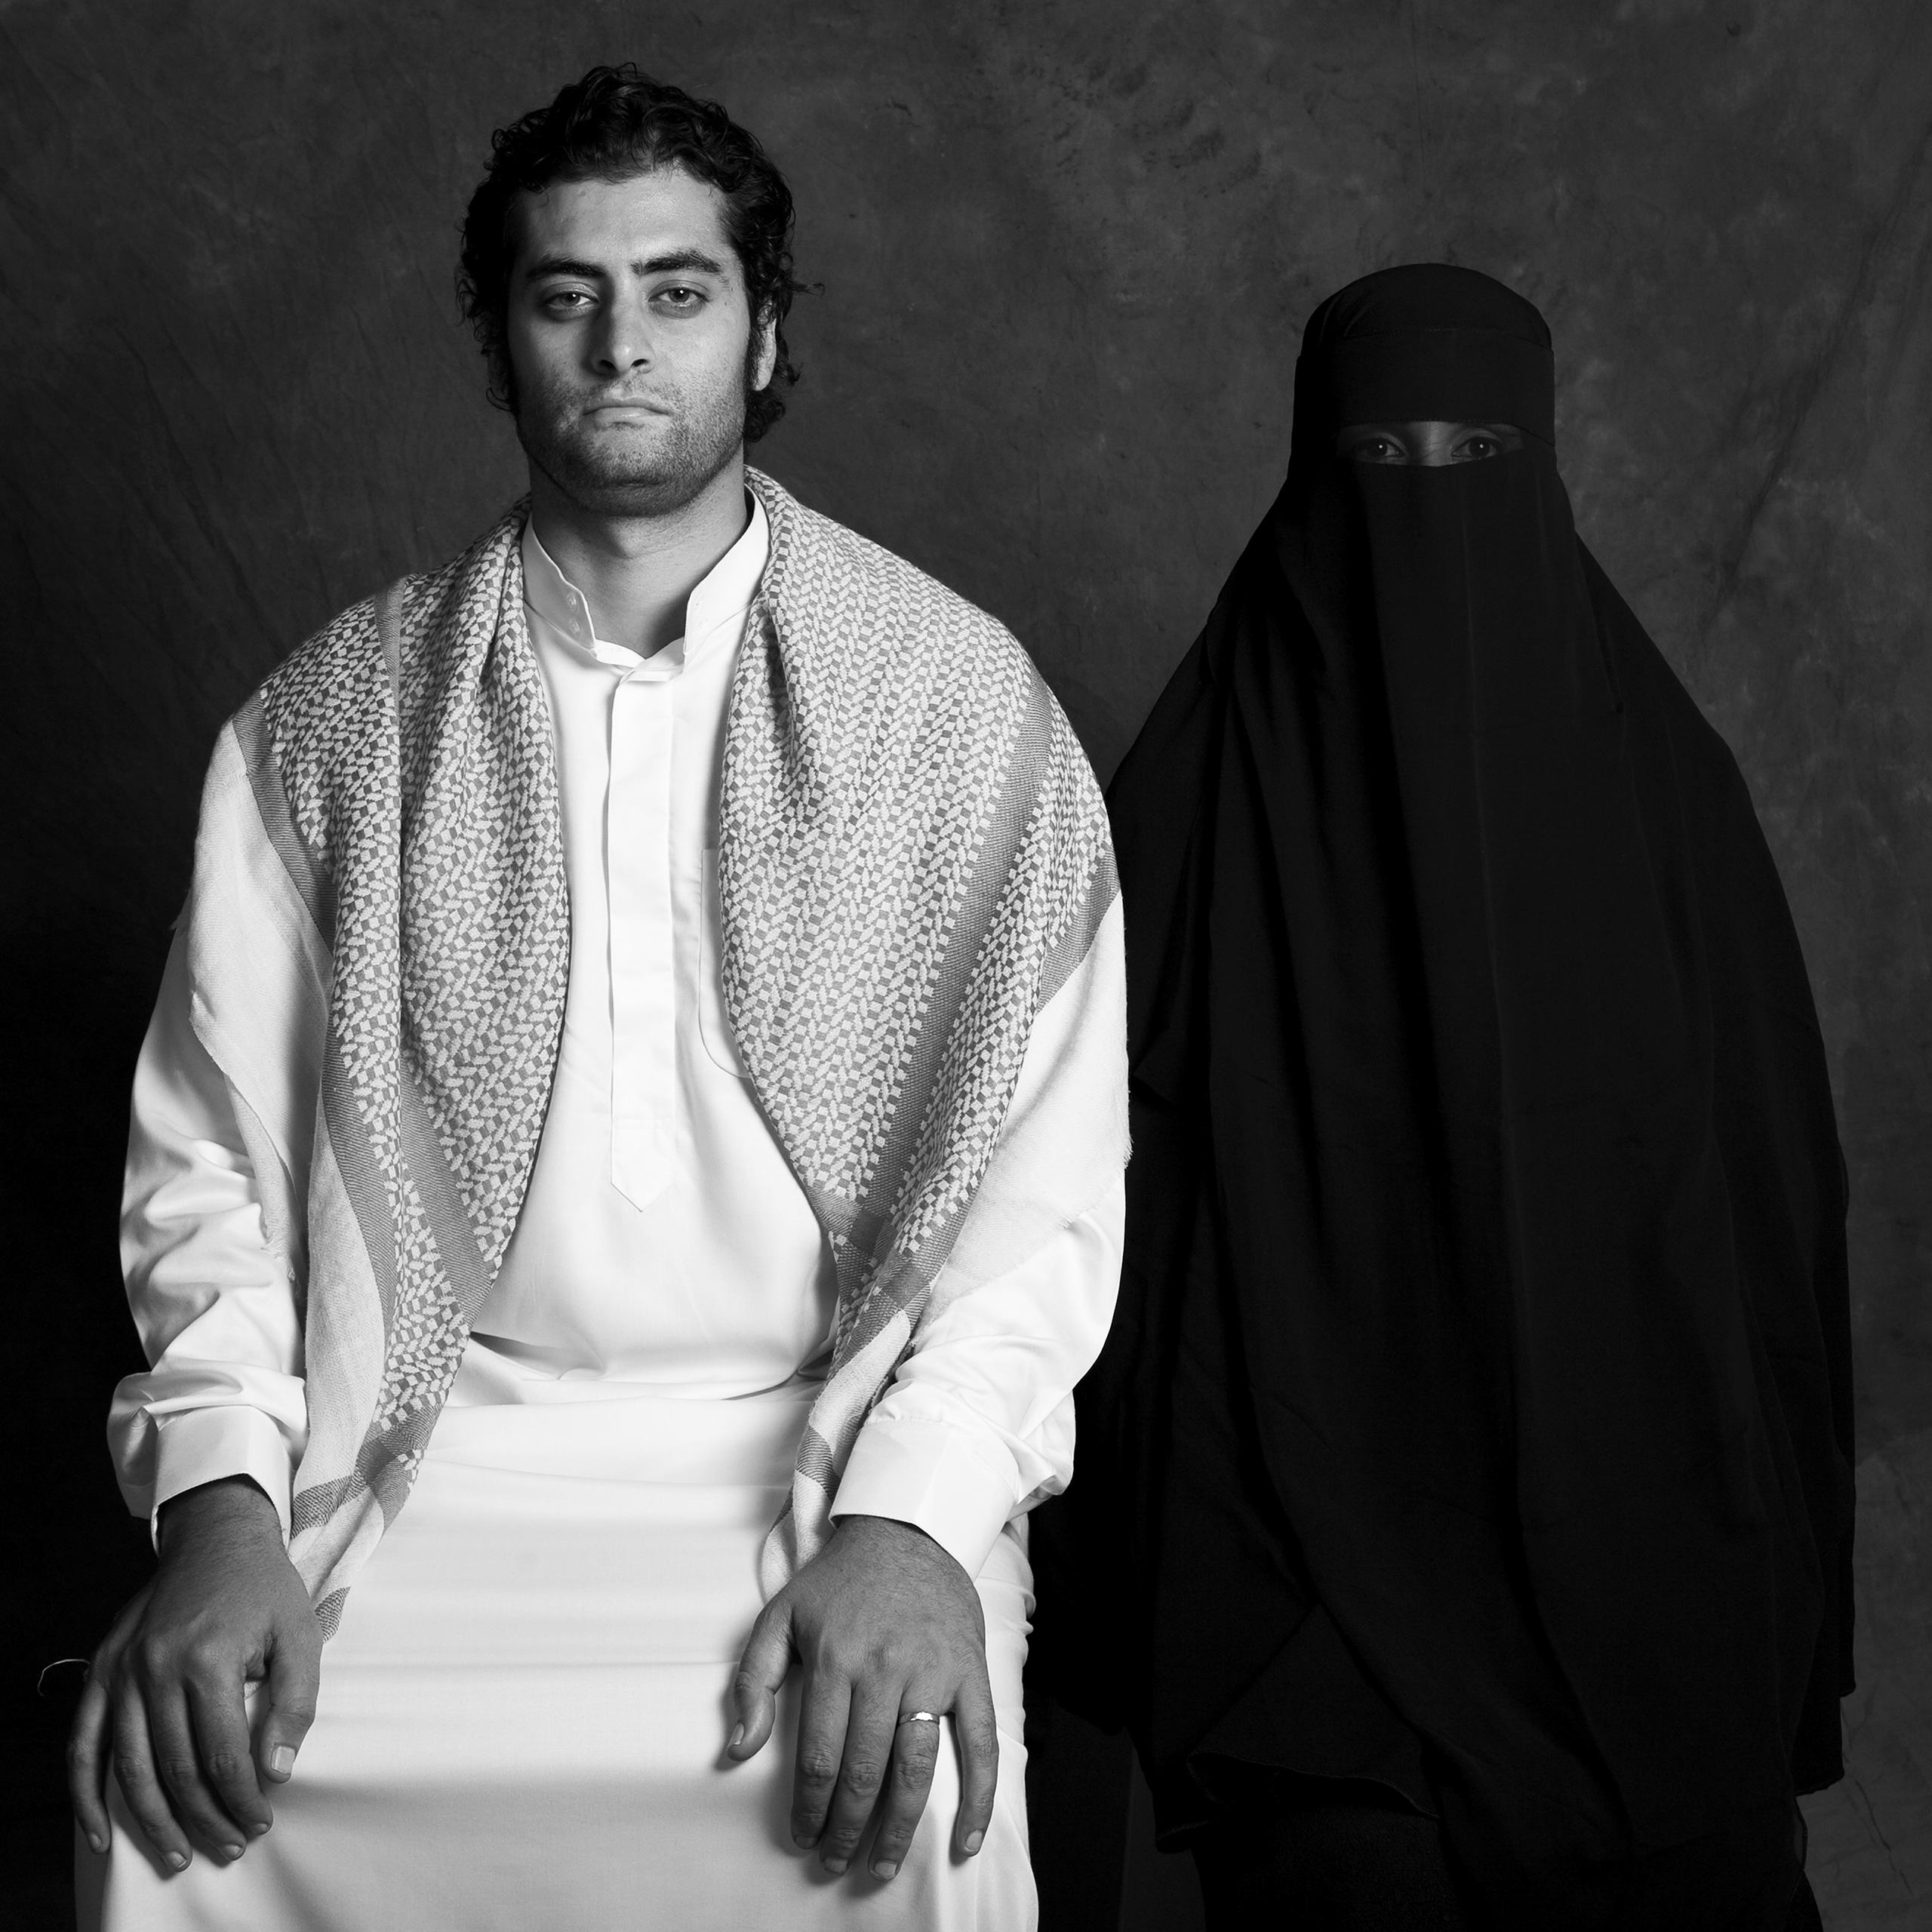 La vestimenta de una pareja musulmana, ella lleva el burka